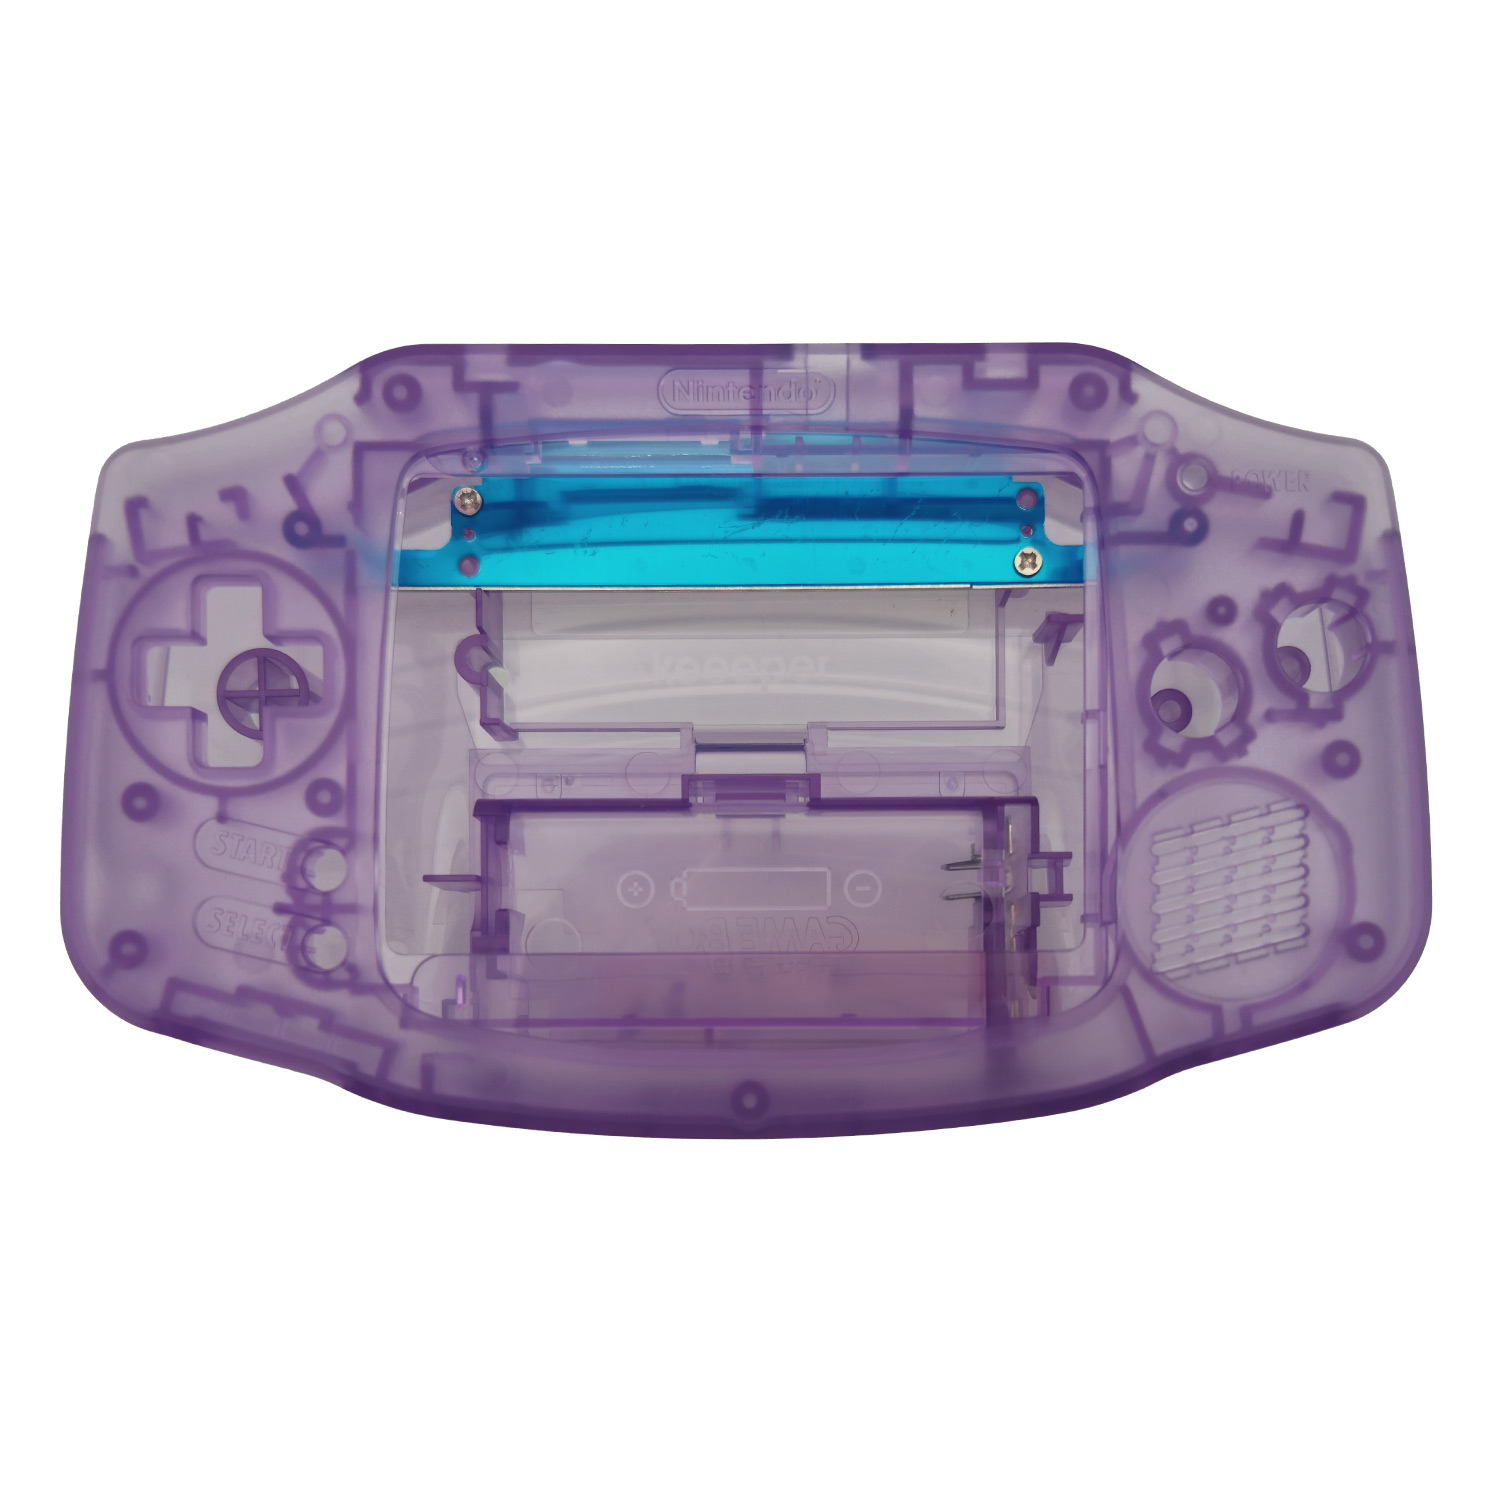 Gehäuse (Atomic Purple) für Game Boy Advance